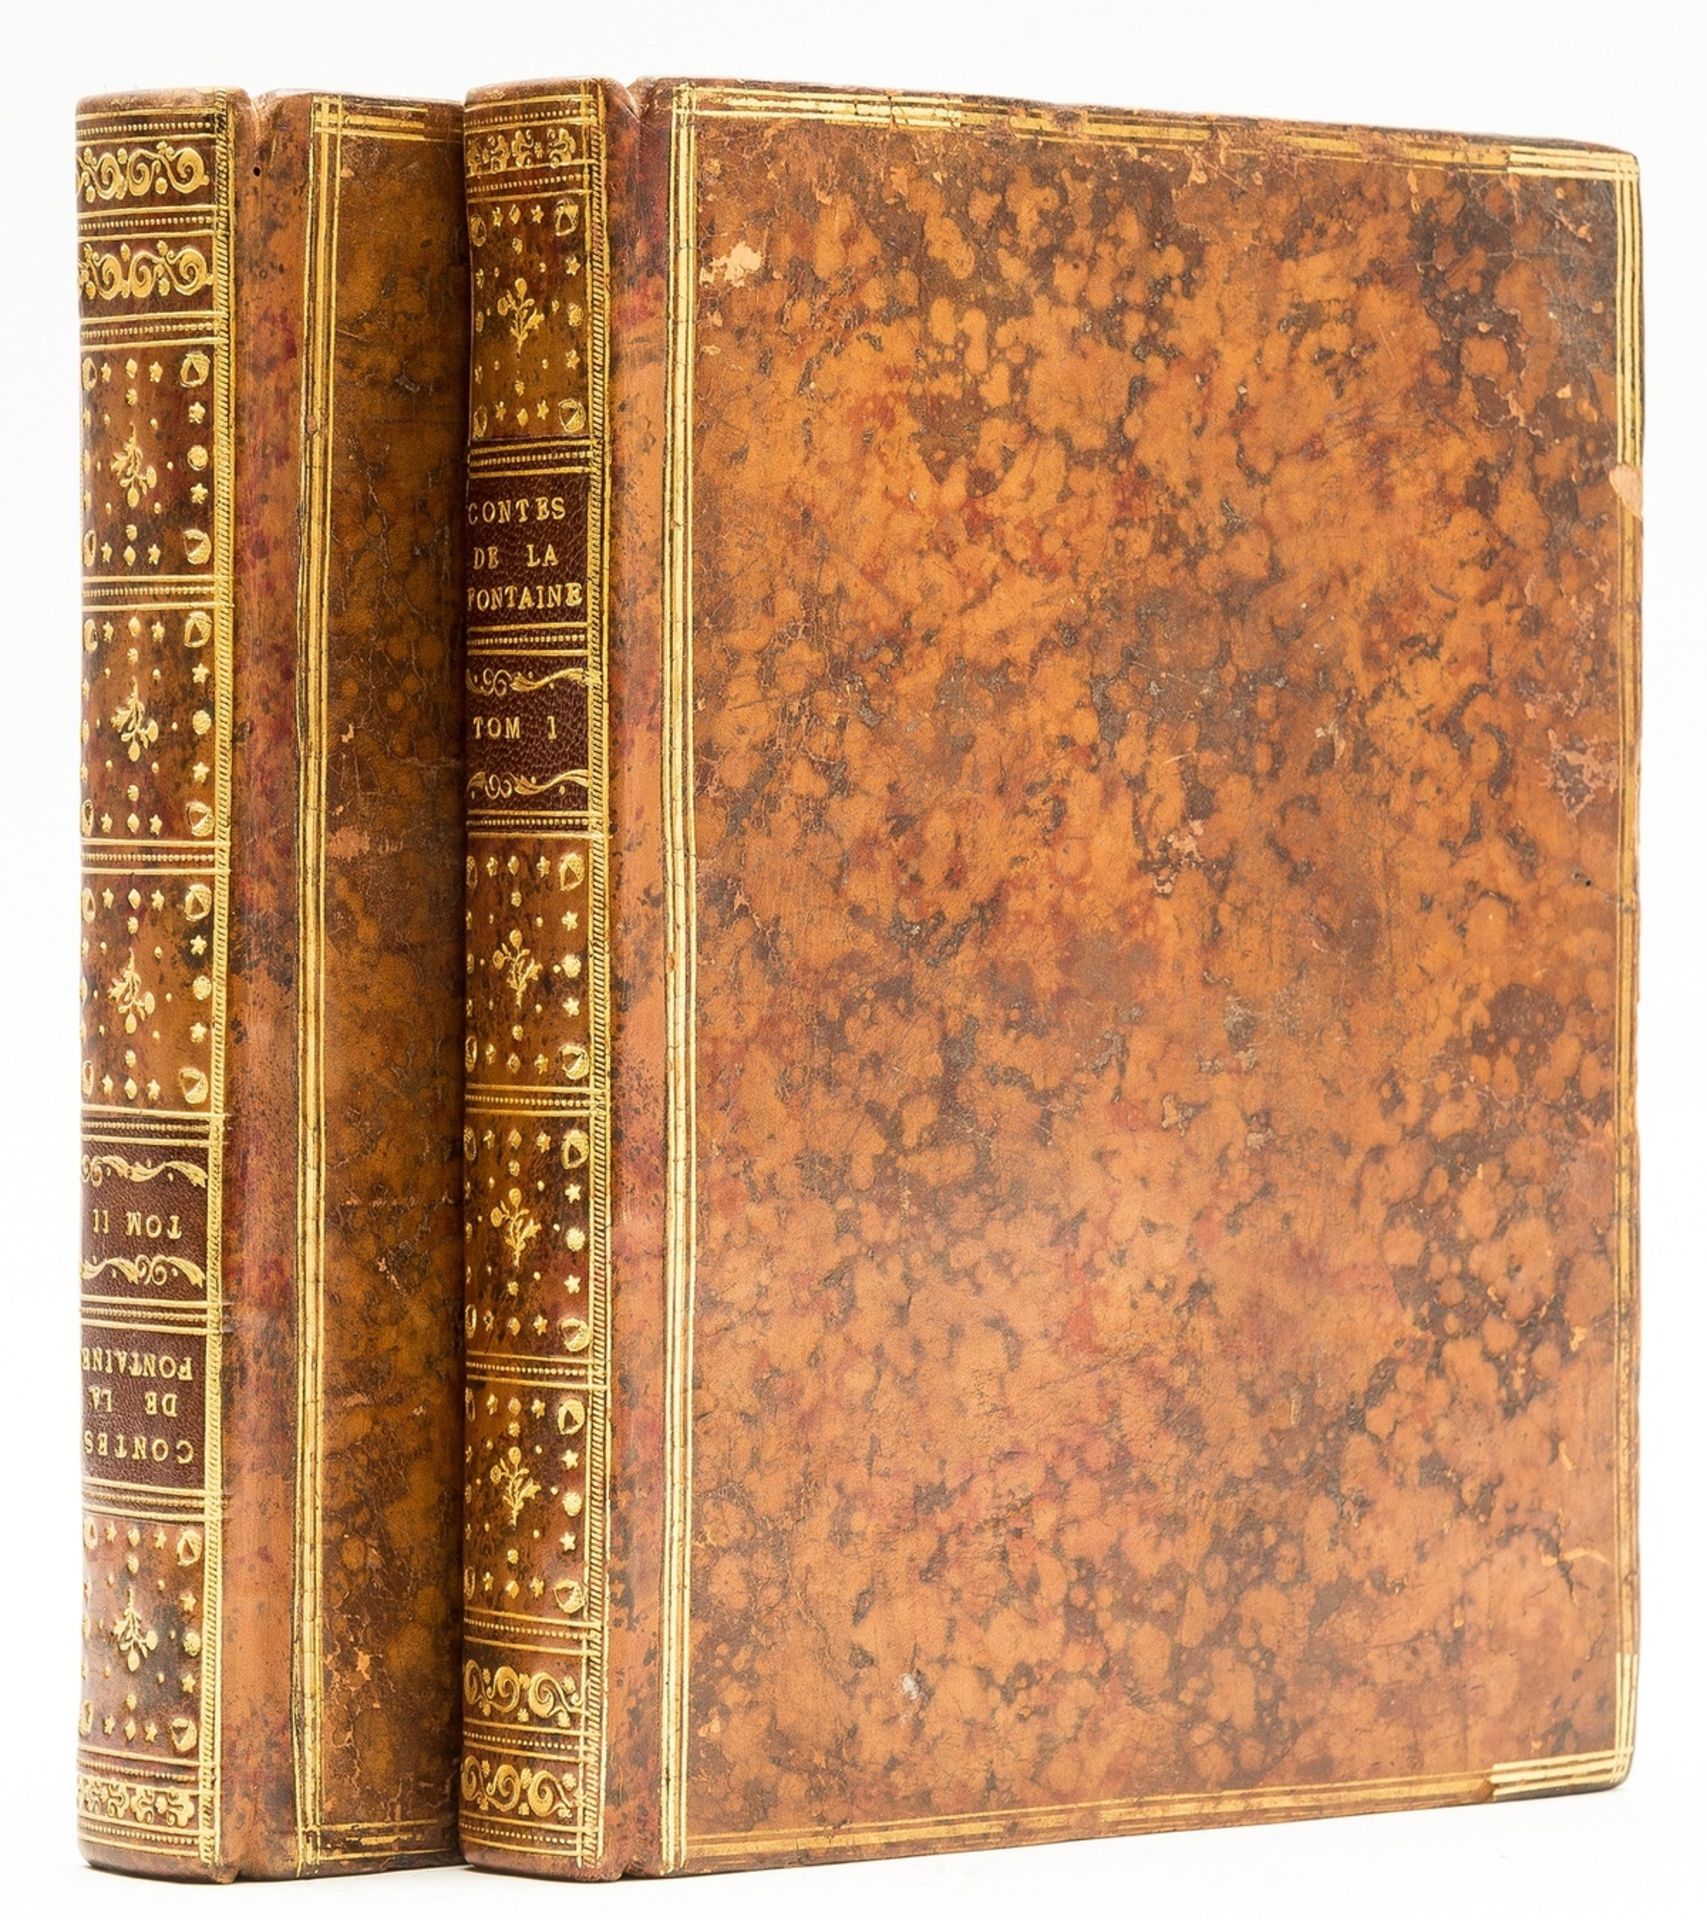 La Fontaine (Jean de) Contes et Nouvelles en Vers, 2 vol., engraved plates, [Paris], 1777.